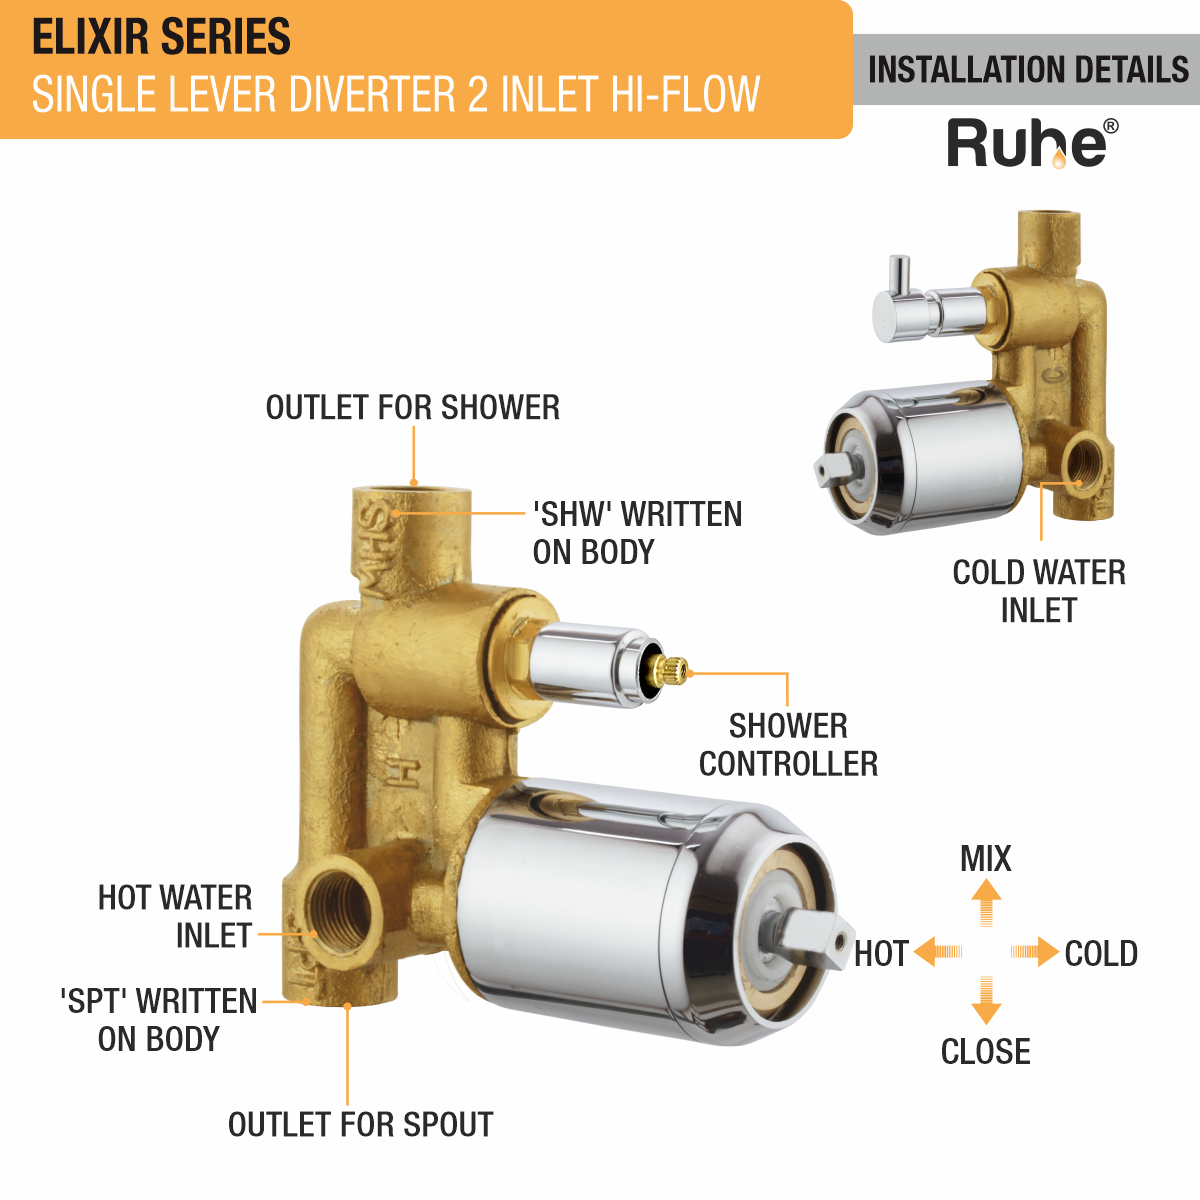 Elixir Single Lever 2-inlet Hi-Flow Diverter (Complete Set) installation details